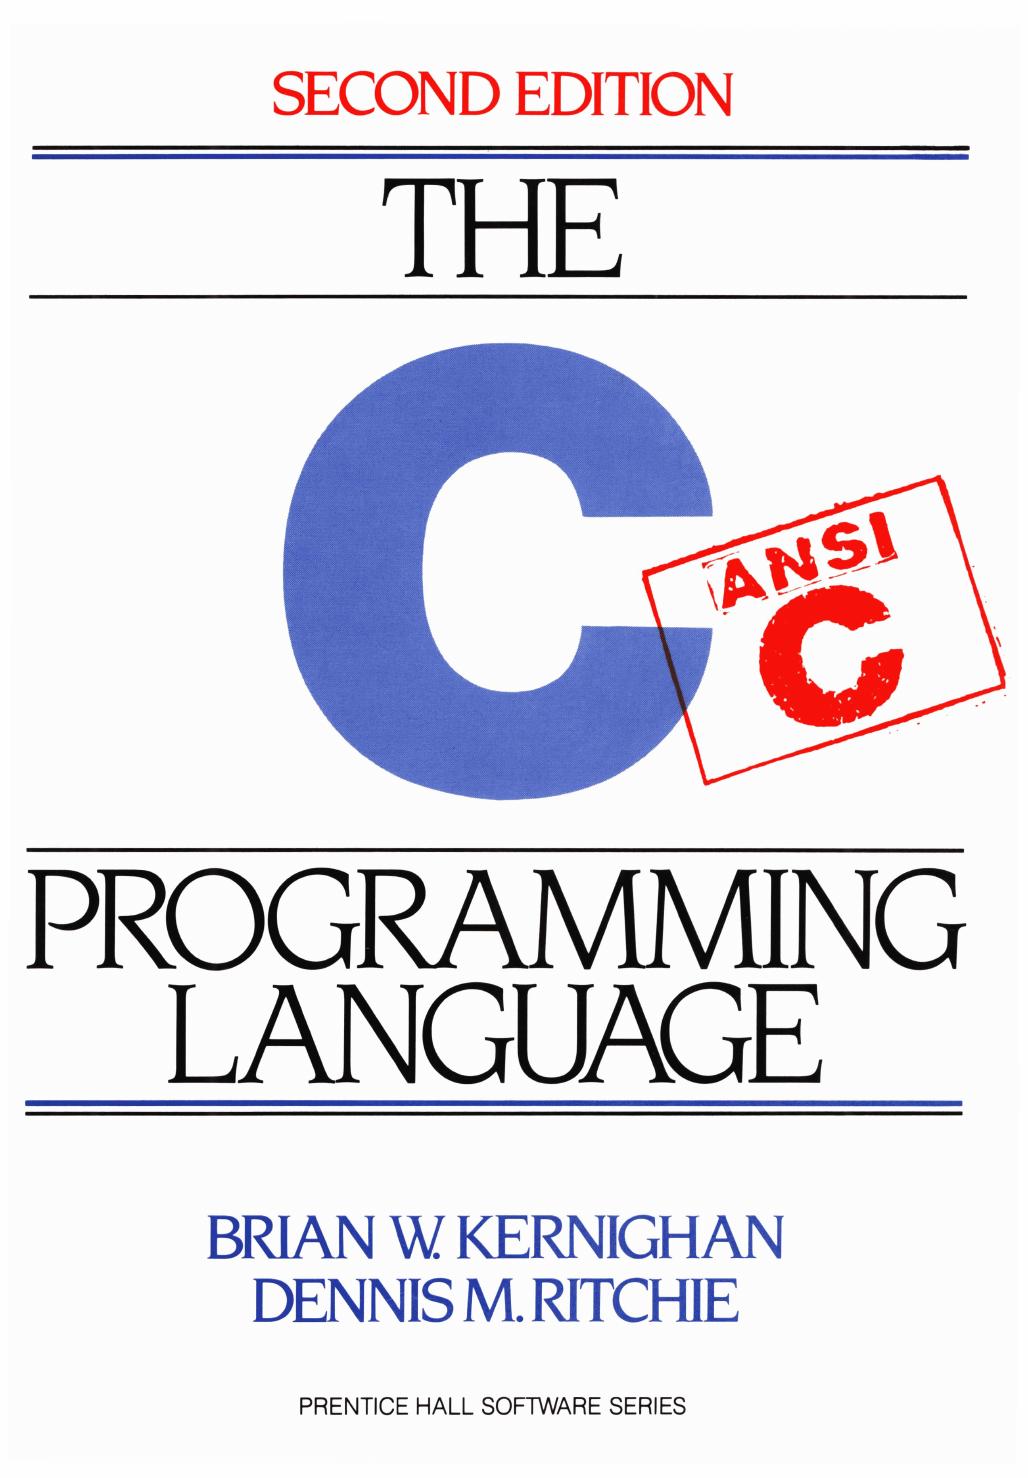 The ANSI C Programming Language